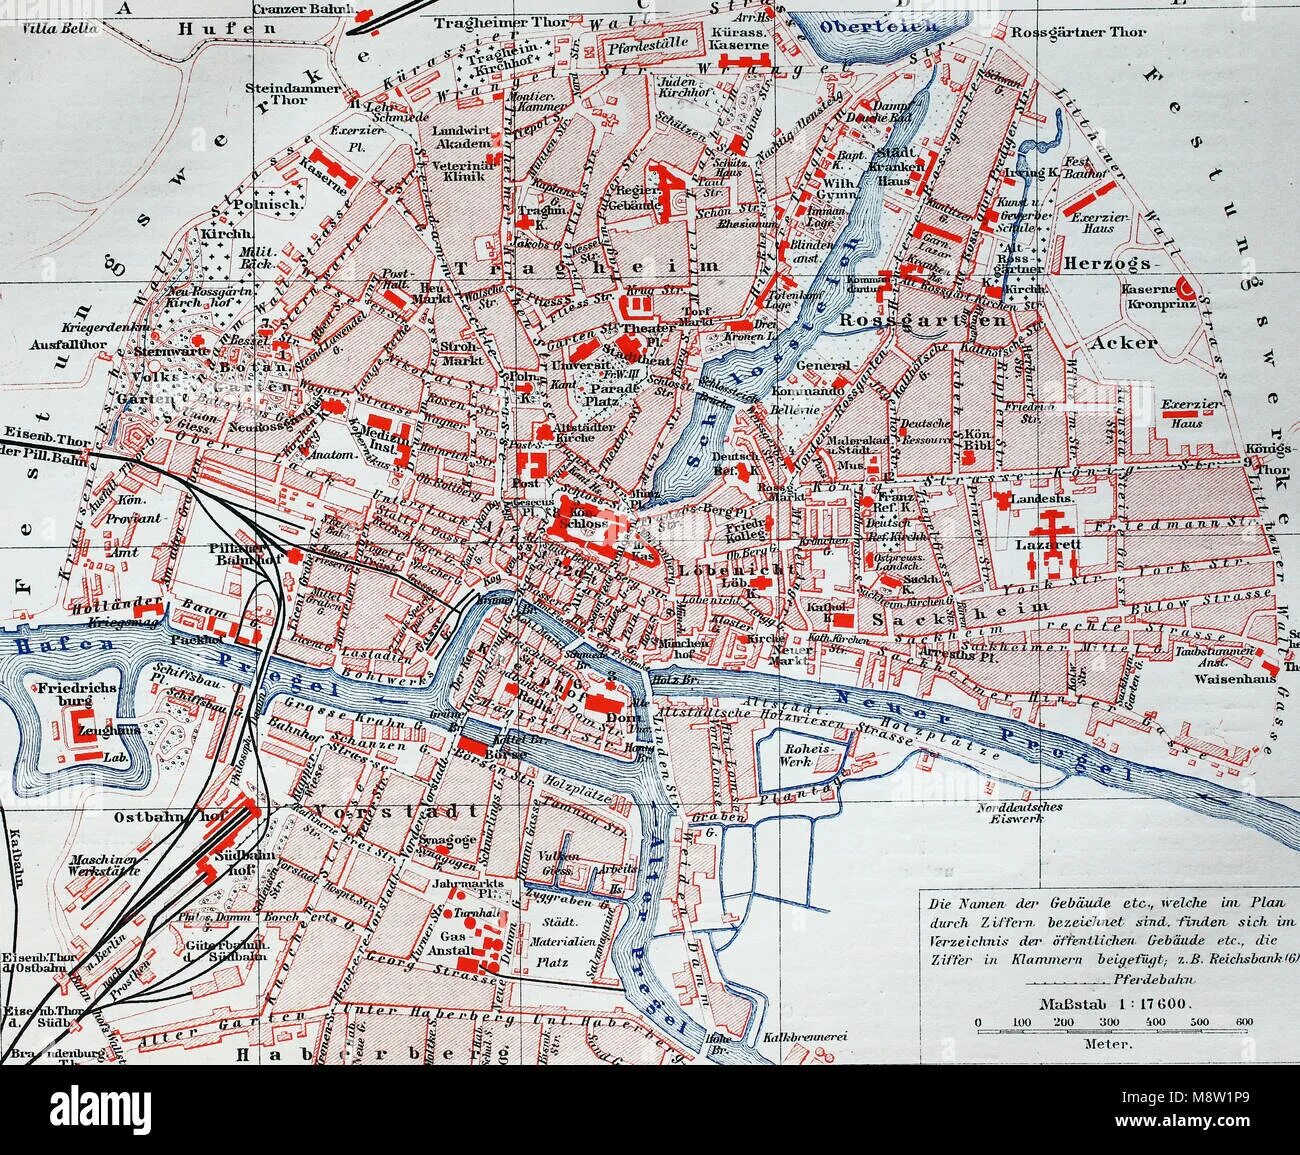 Карта города Кенигсберга 1940. Карта города Кенигсберга 1940 года. Районы Кенигсберга на карте. Кенигсберг город на карте.